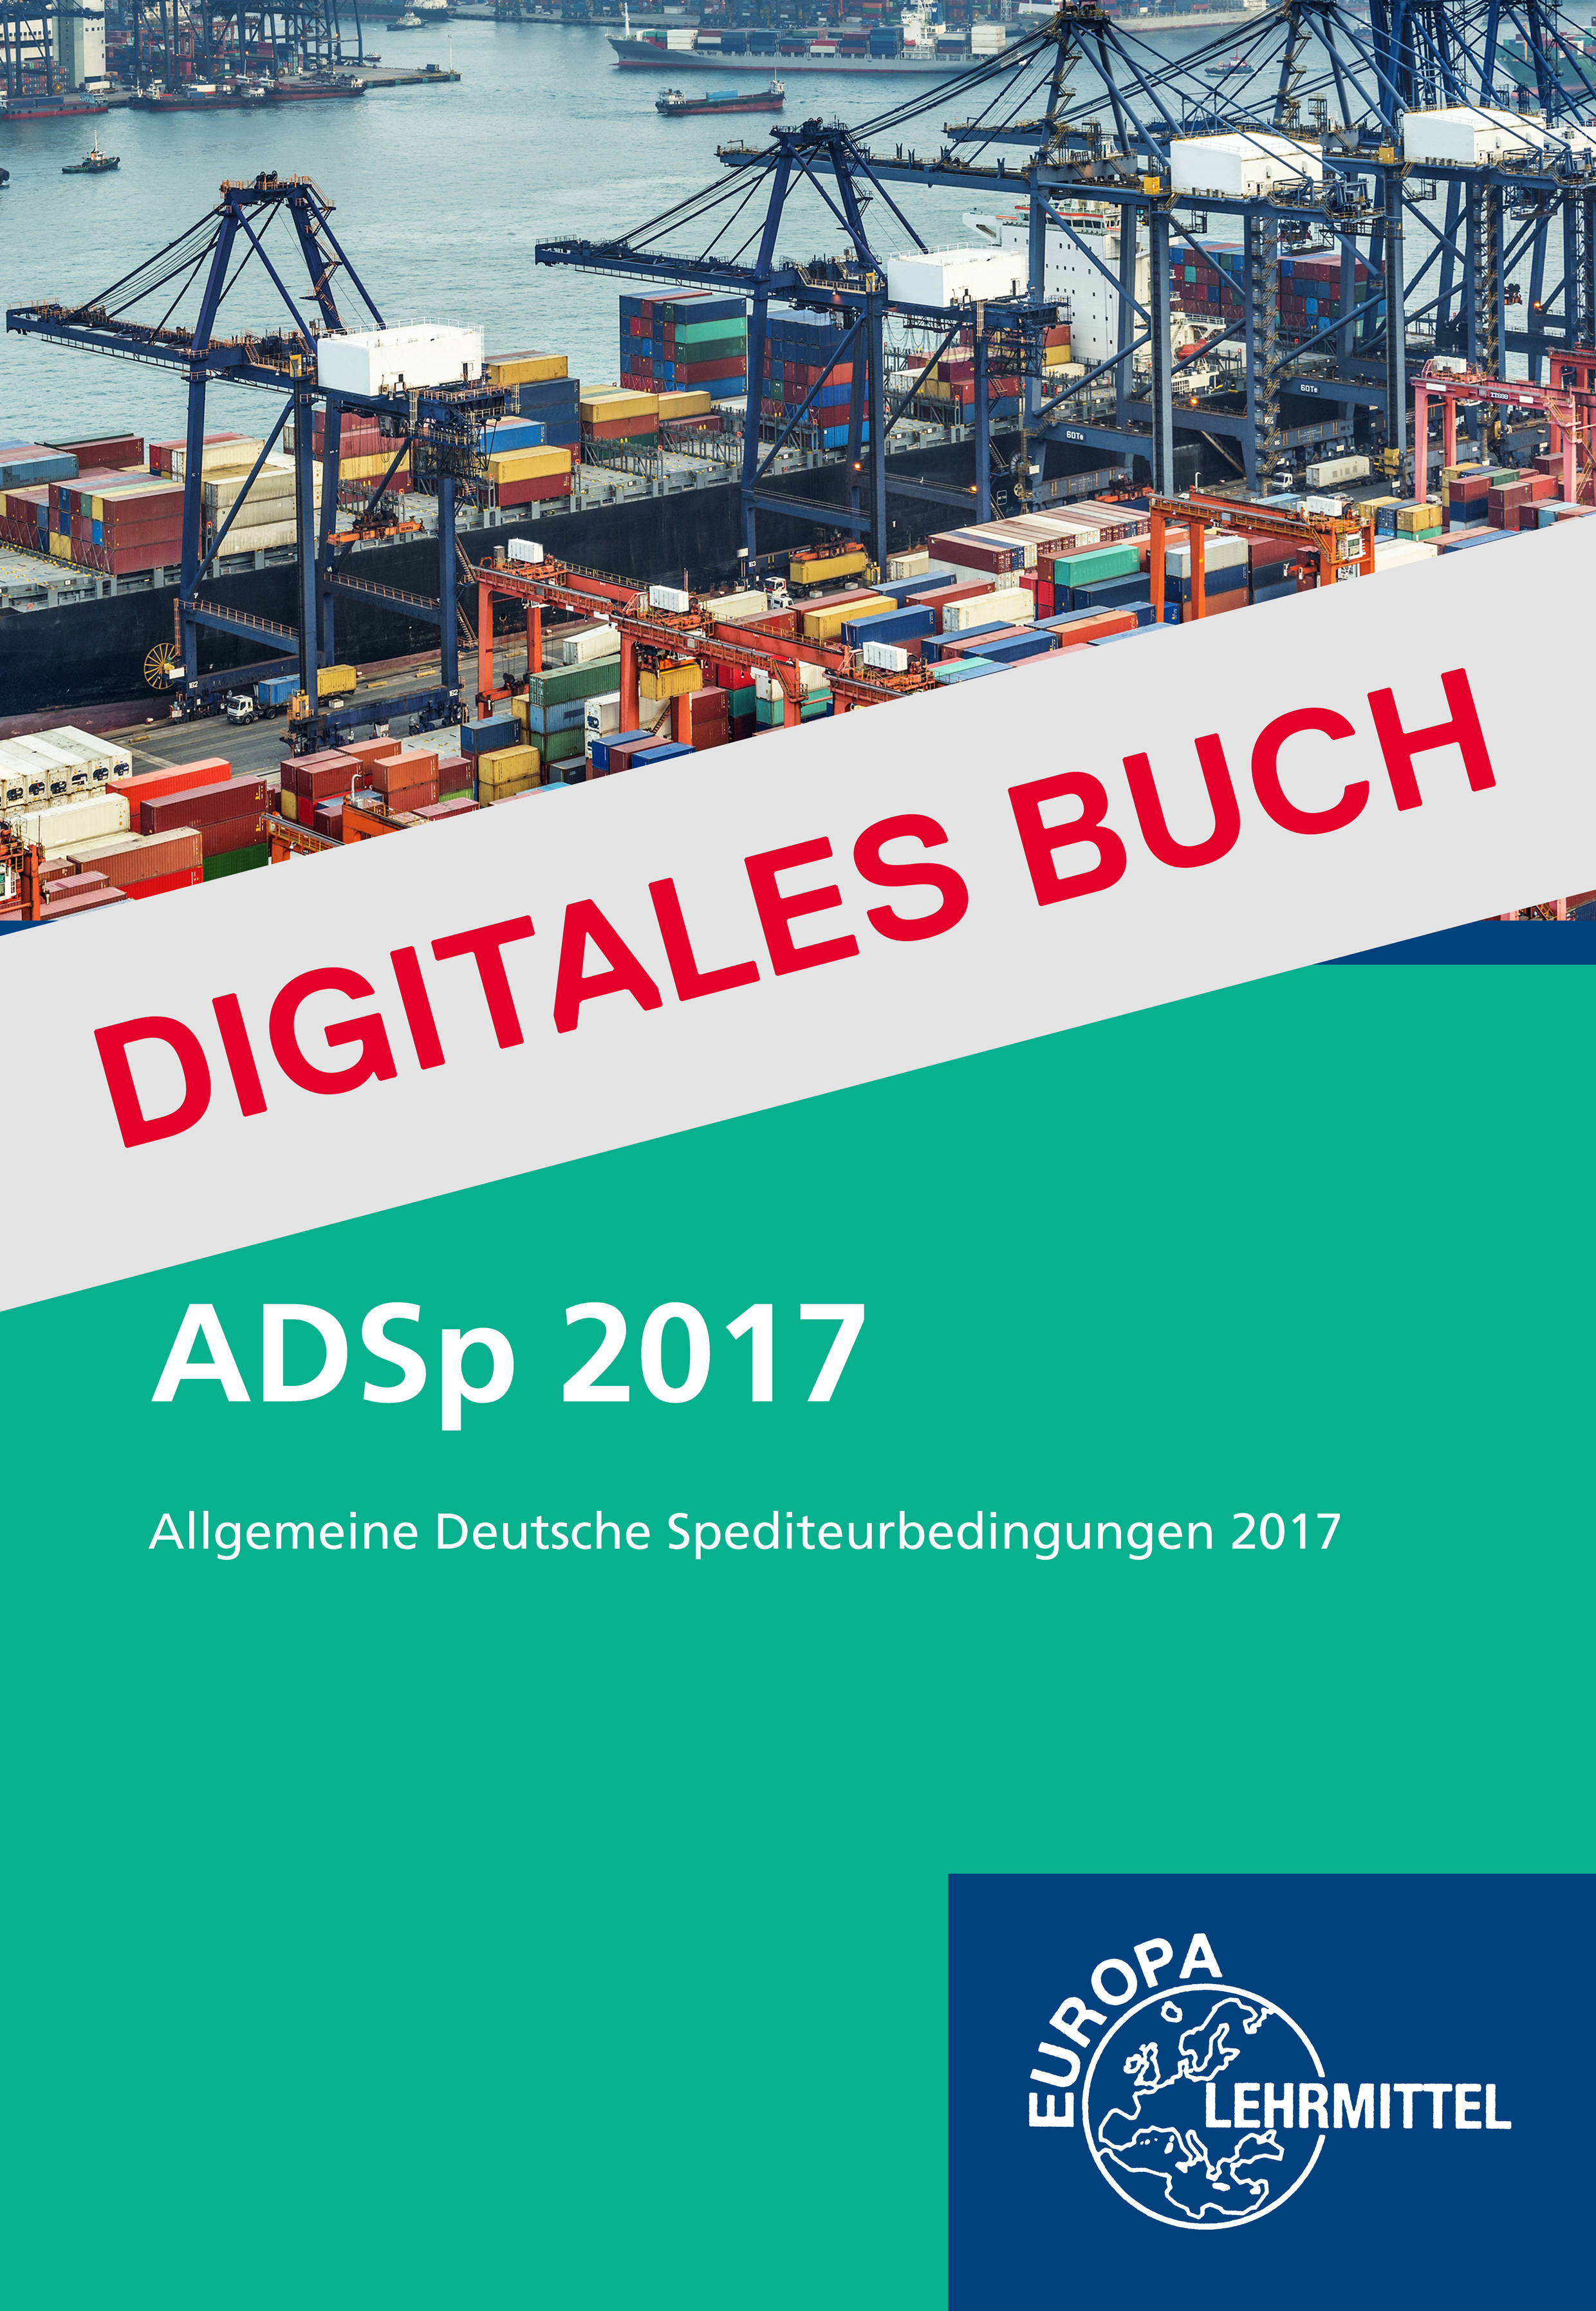 ADSp 2017 - Digitales Buch